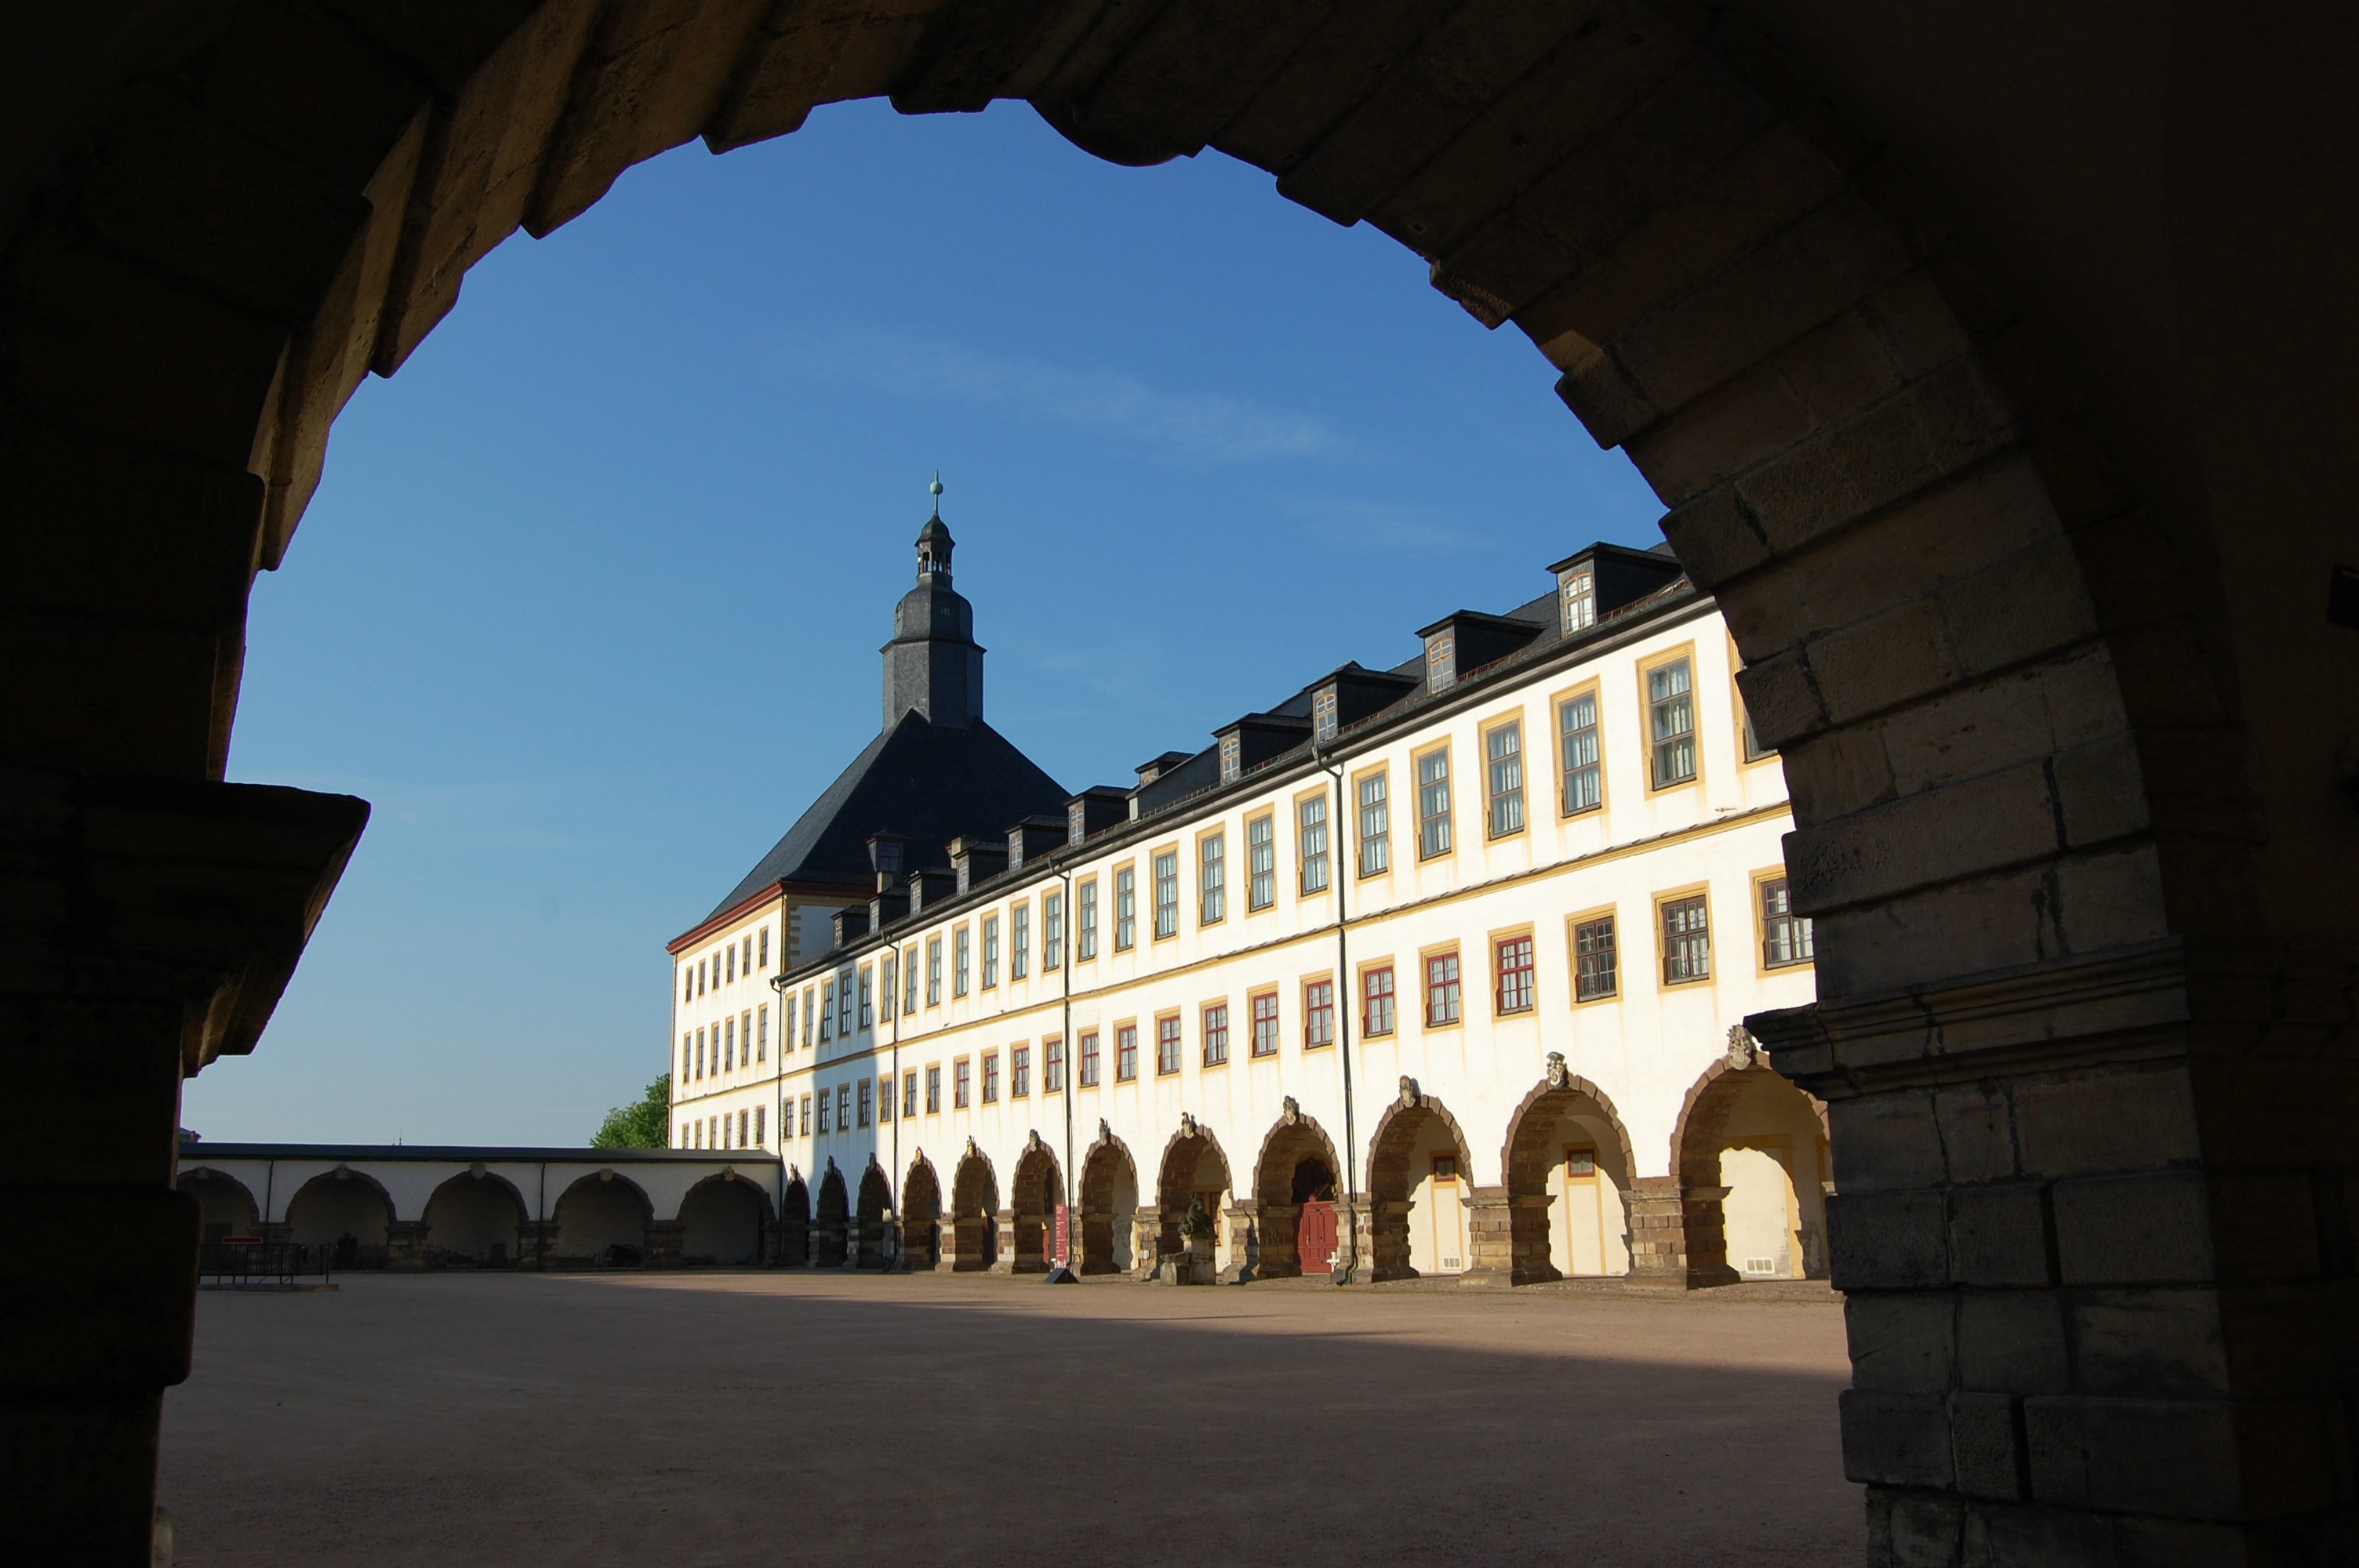 Friedenstein Palace in Gotha